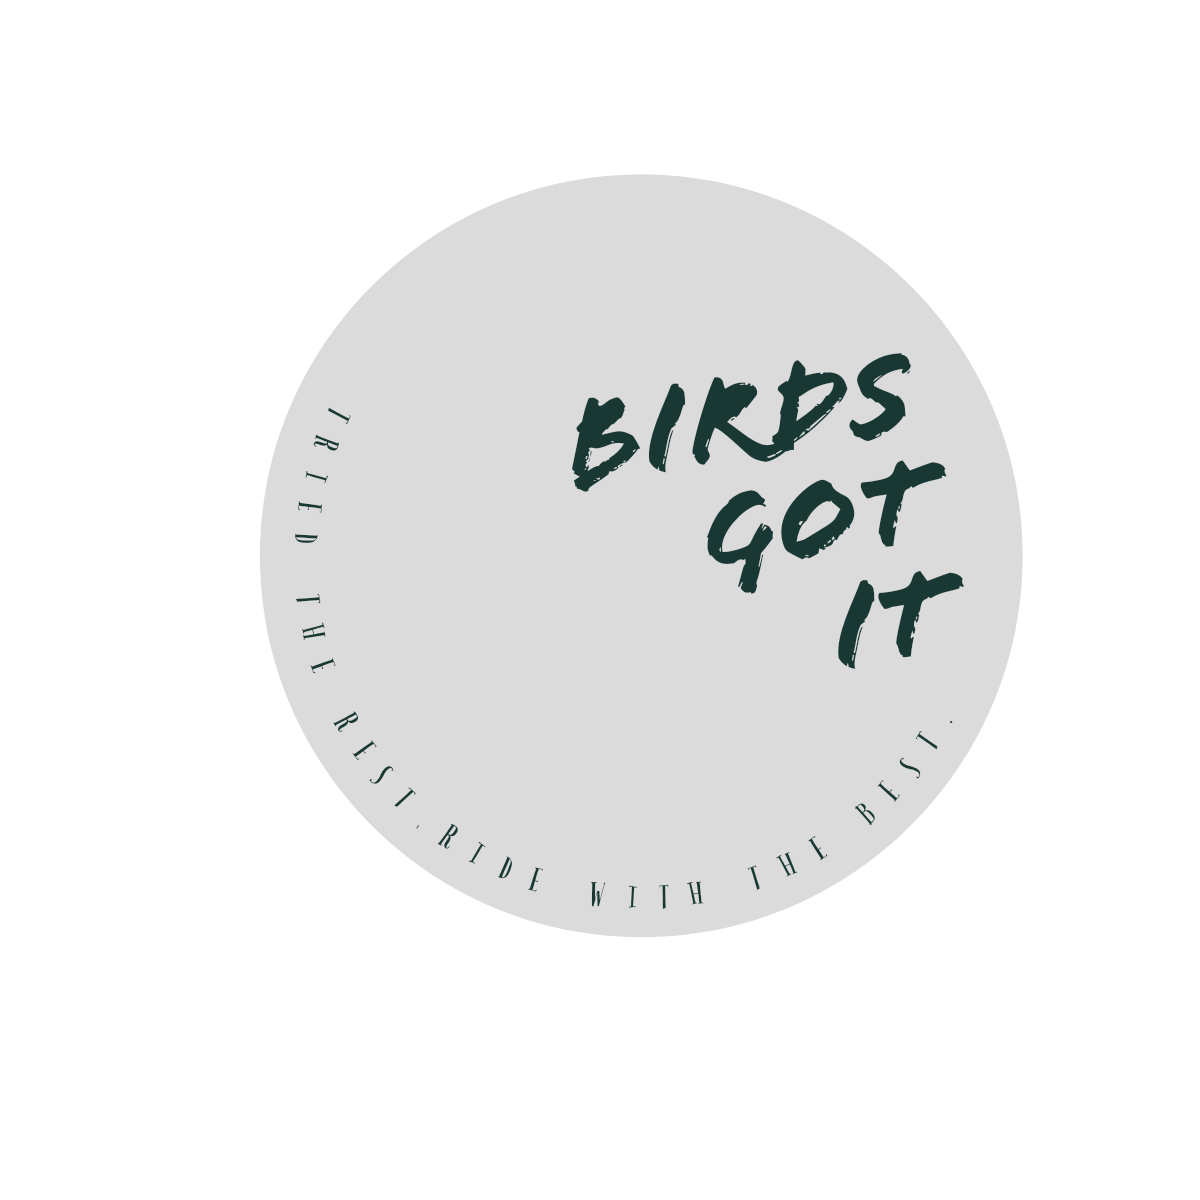 Business logo of Birds-got-it